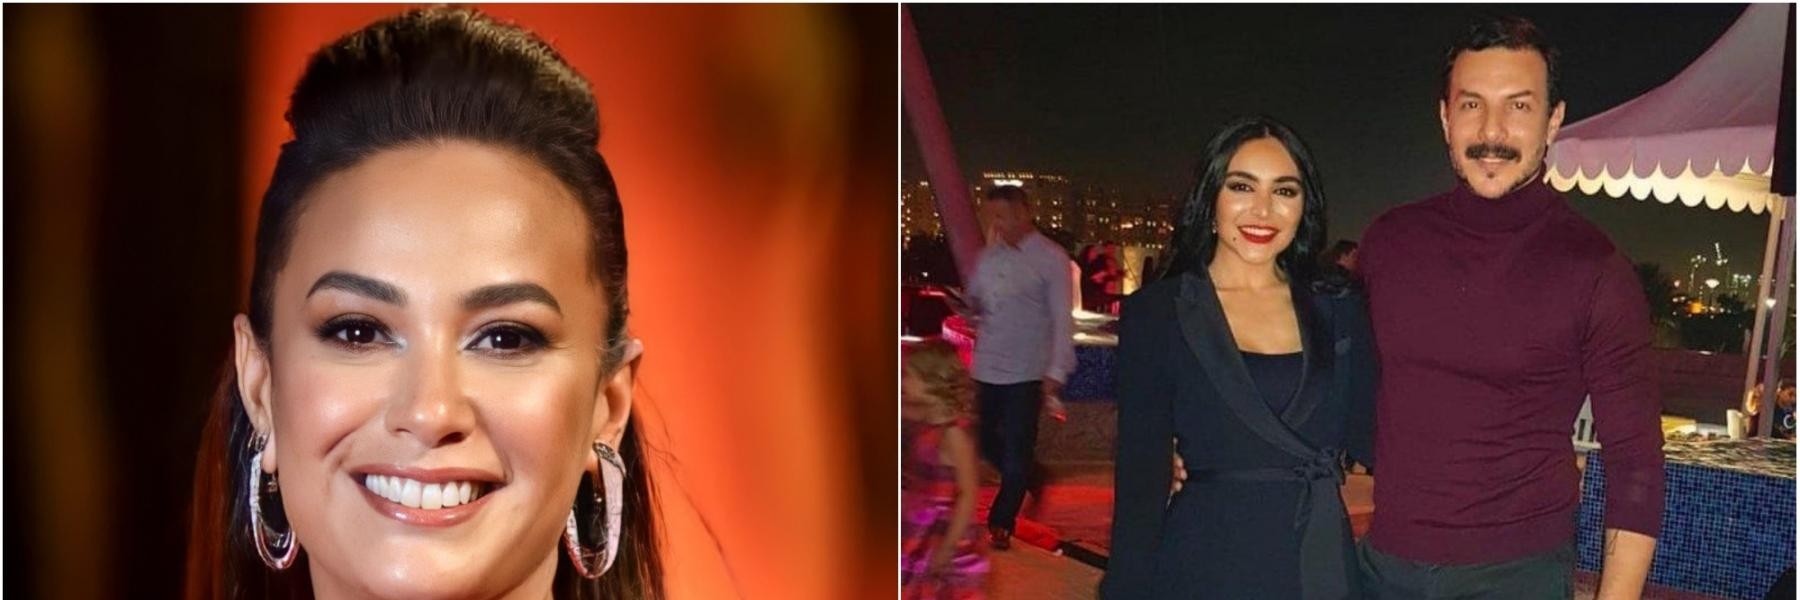 بالفيديو: النجمة "هند صبري" وجهًا لوجه مع خطيبها السابق الفنان "باسل خياط" في الجونة